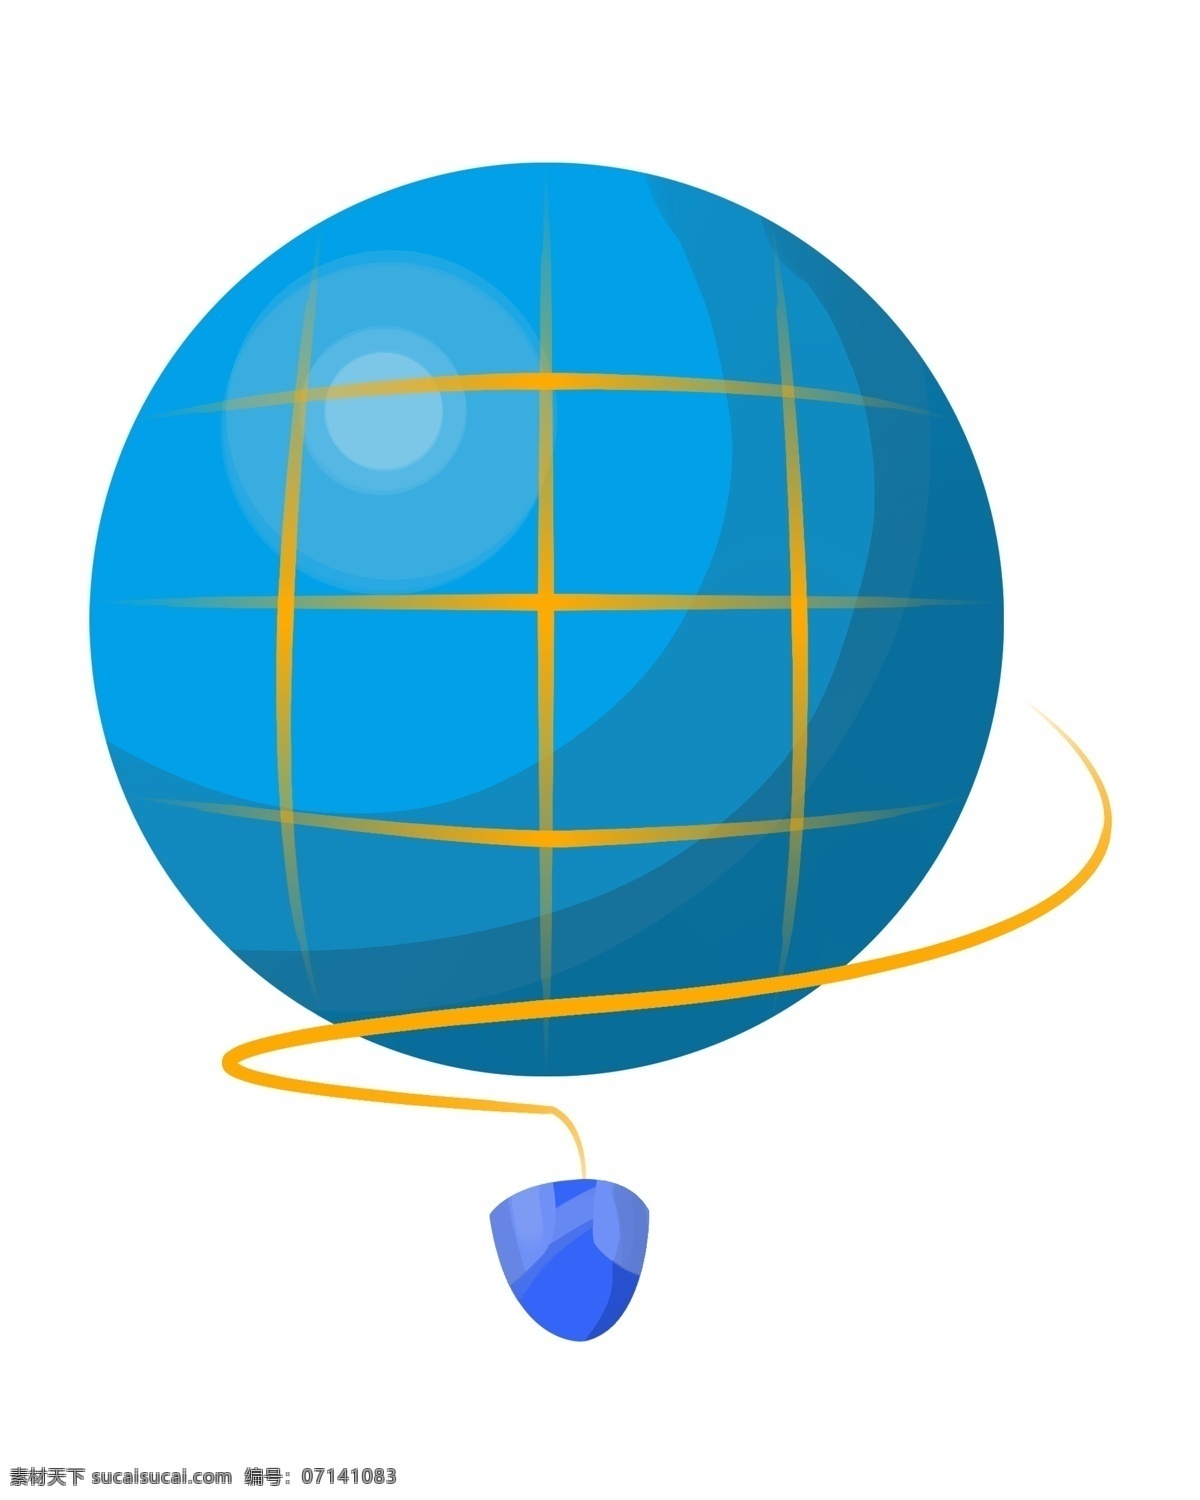 手绘 科技 元素 插画 蓝色的星球 卡通插画 手绘科技插画 黄色的条纹 先进的科技 井字纹星球